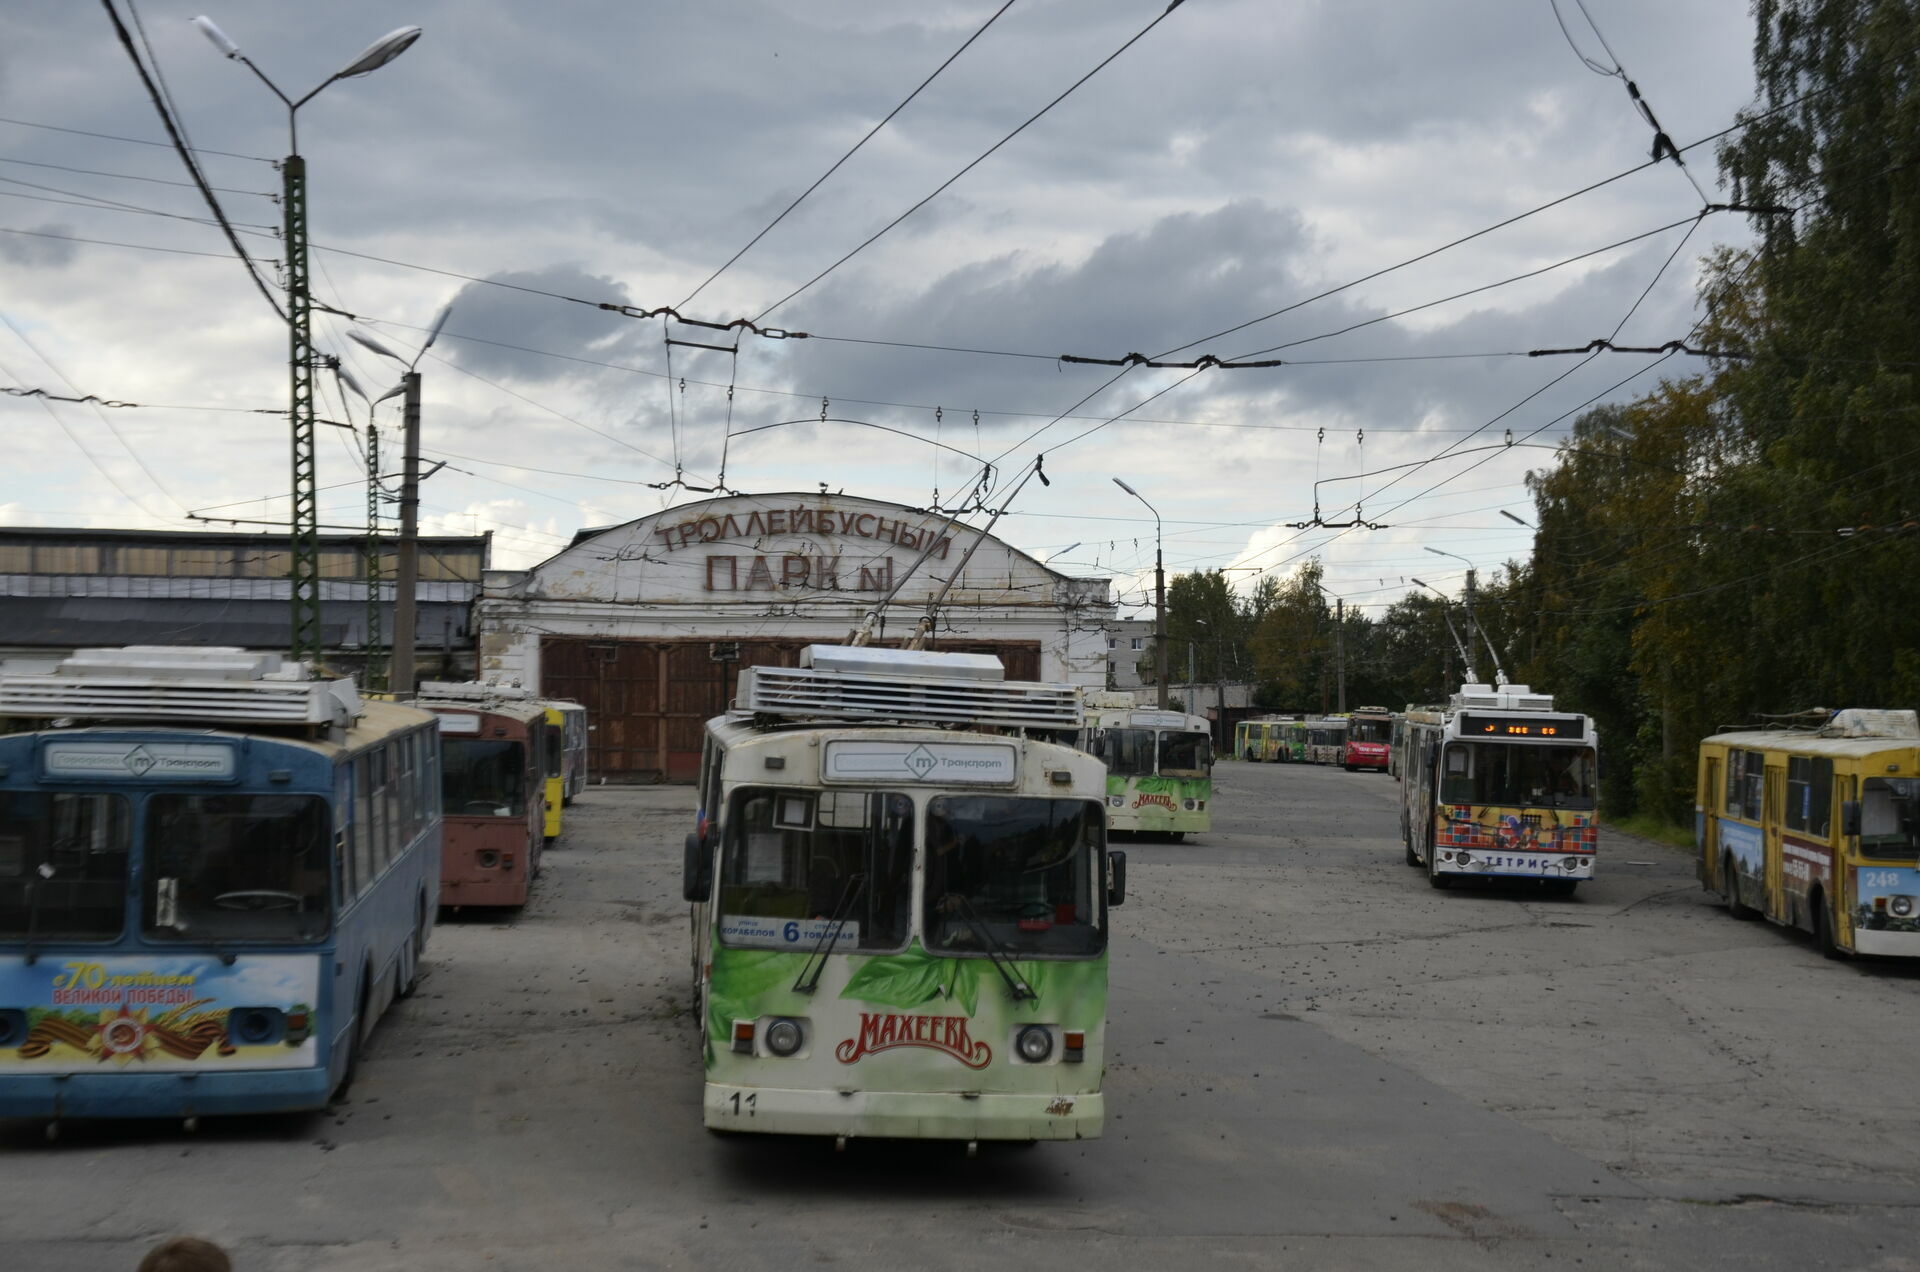 Петрозаводчане жалуются на состояние новых троллейбусов, выпущенных на маршруты